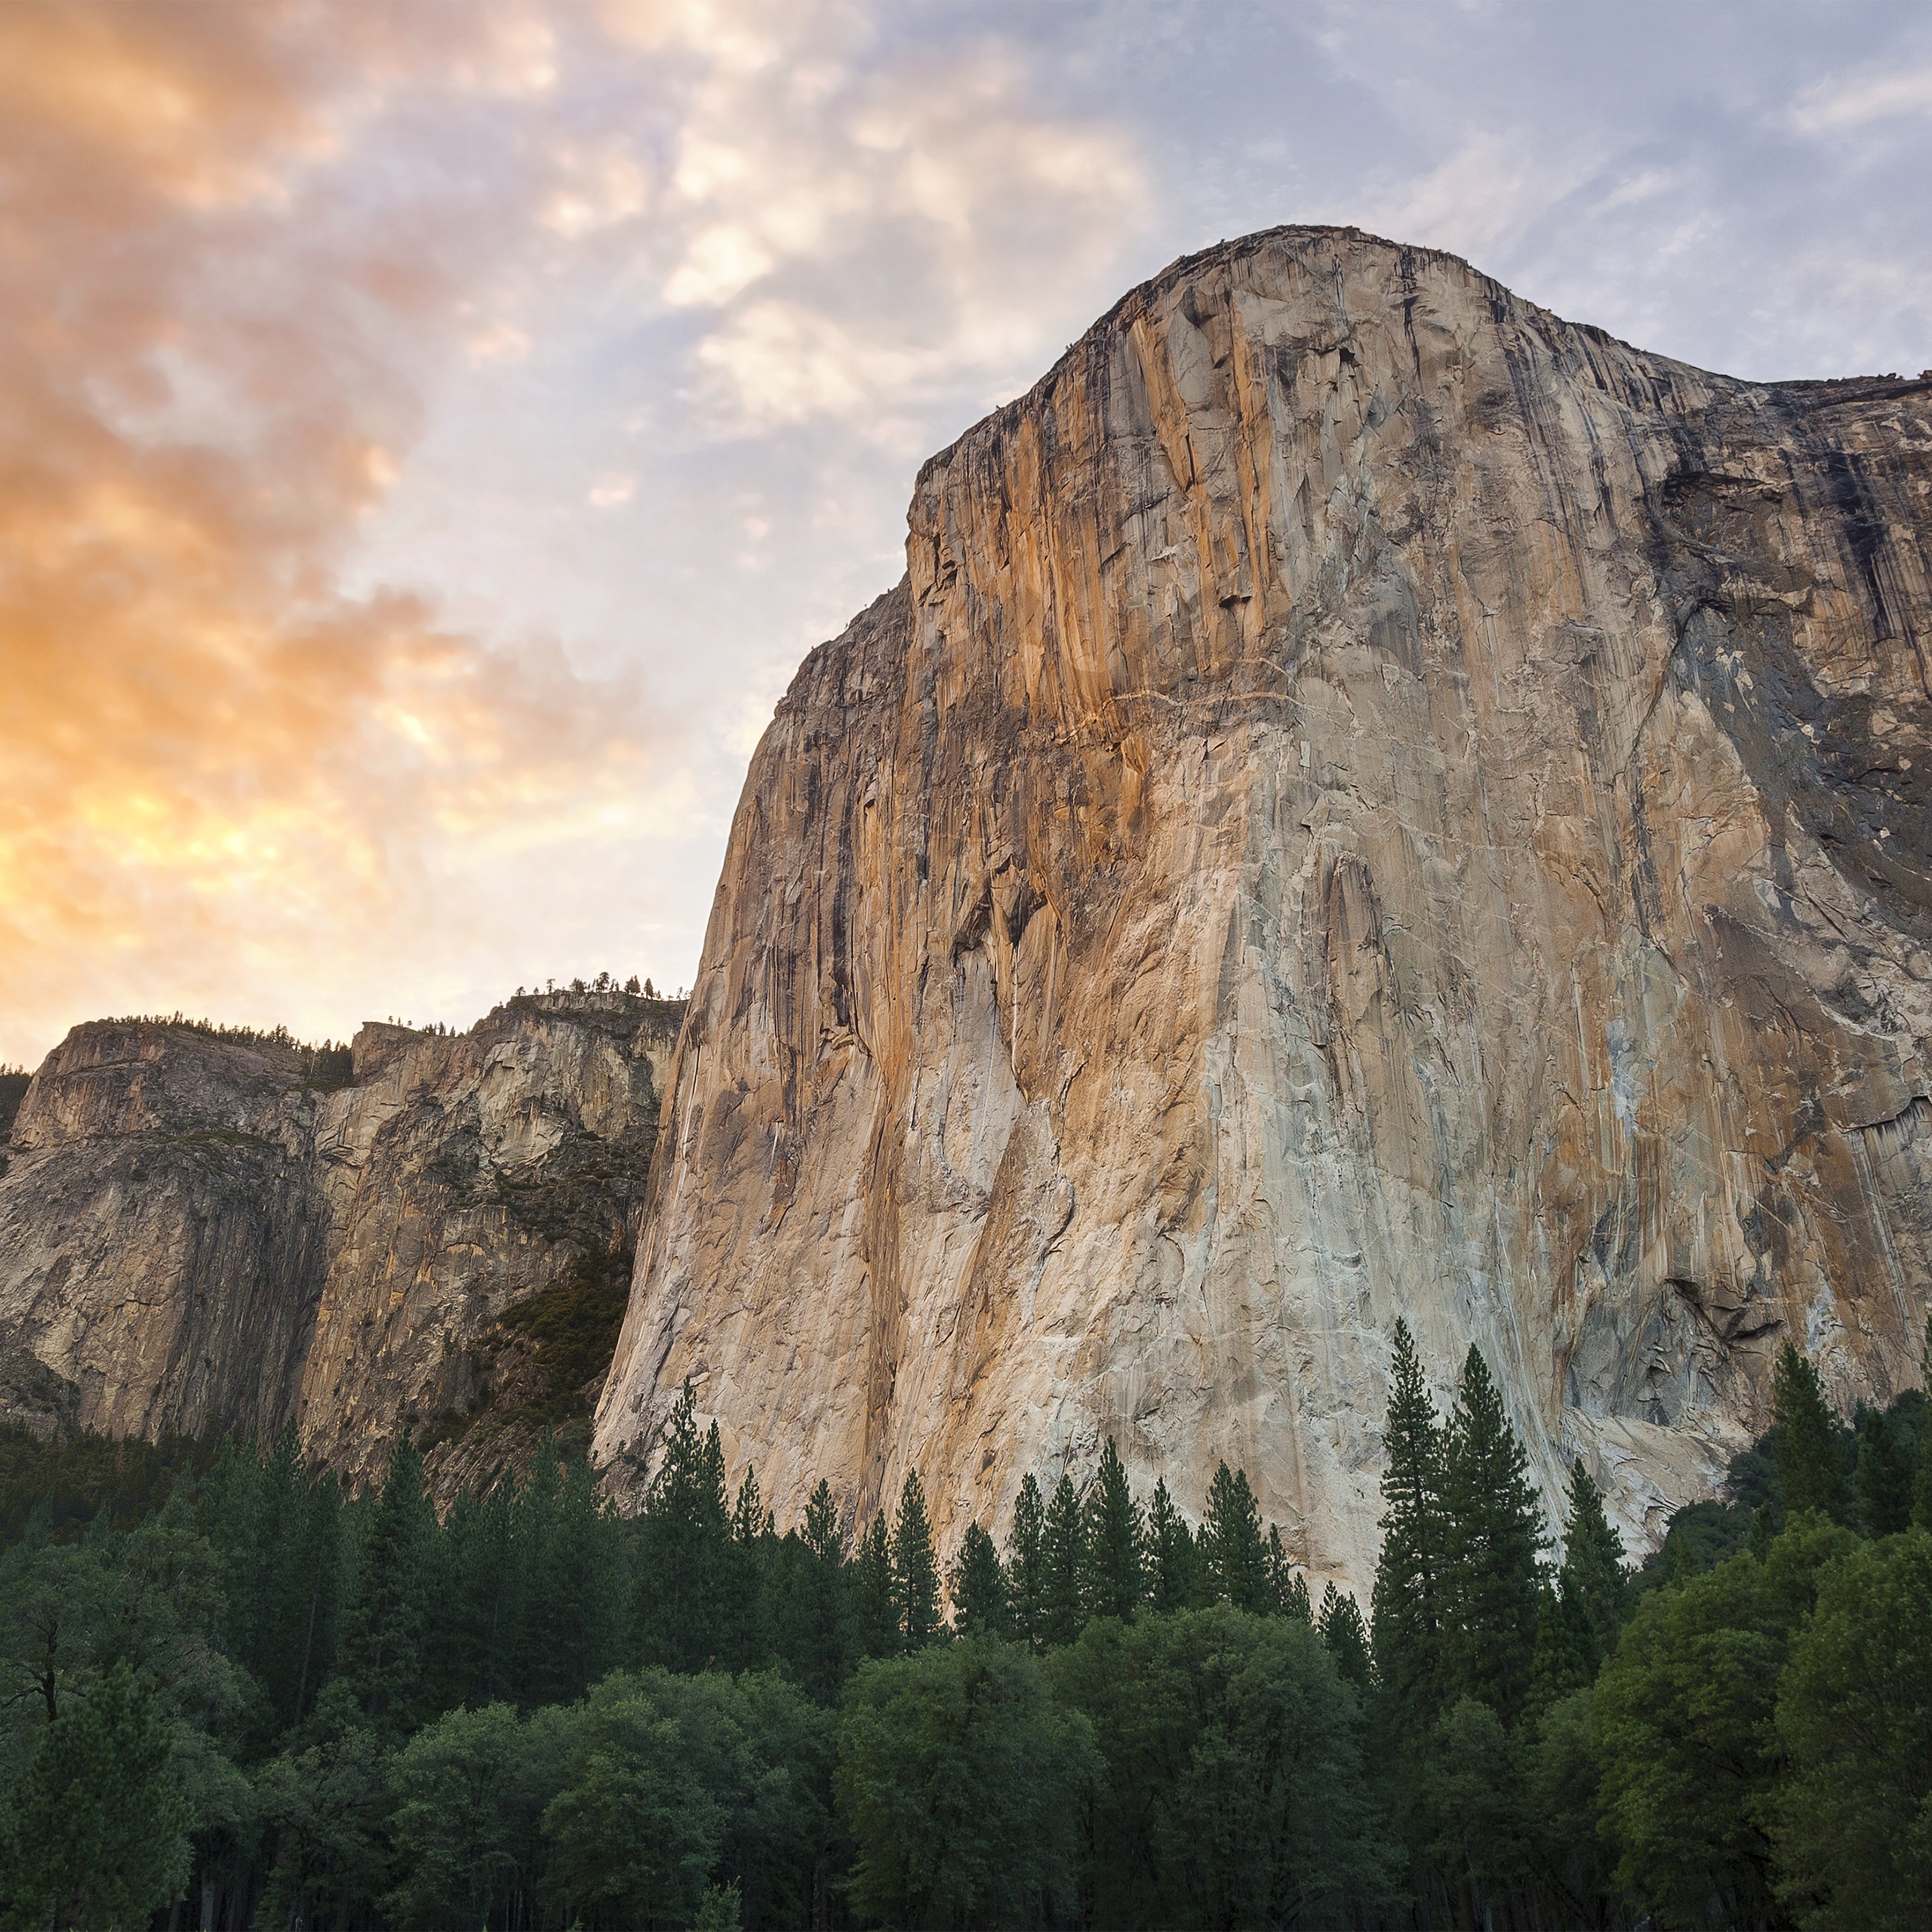 Wallpaper De Yosemite Pour iPhone Ipod Et iPad